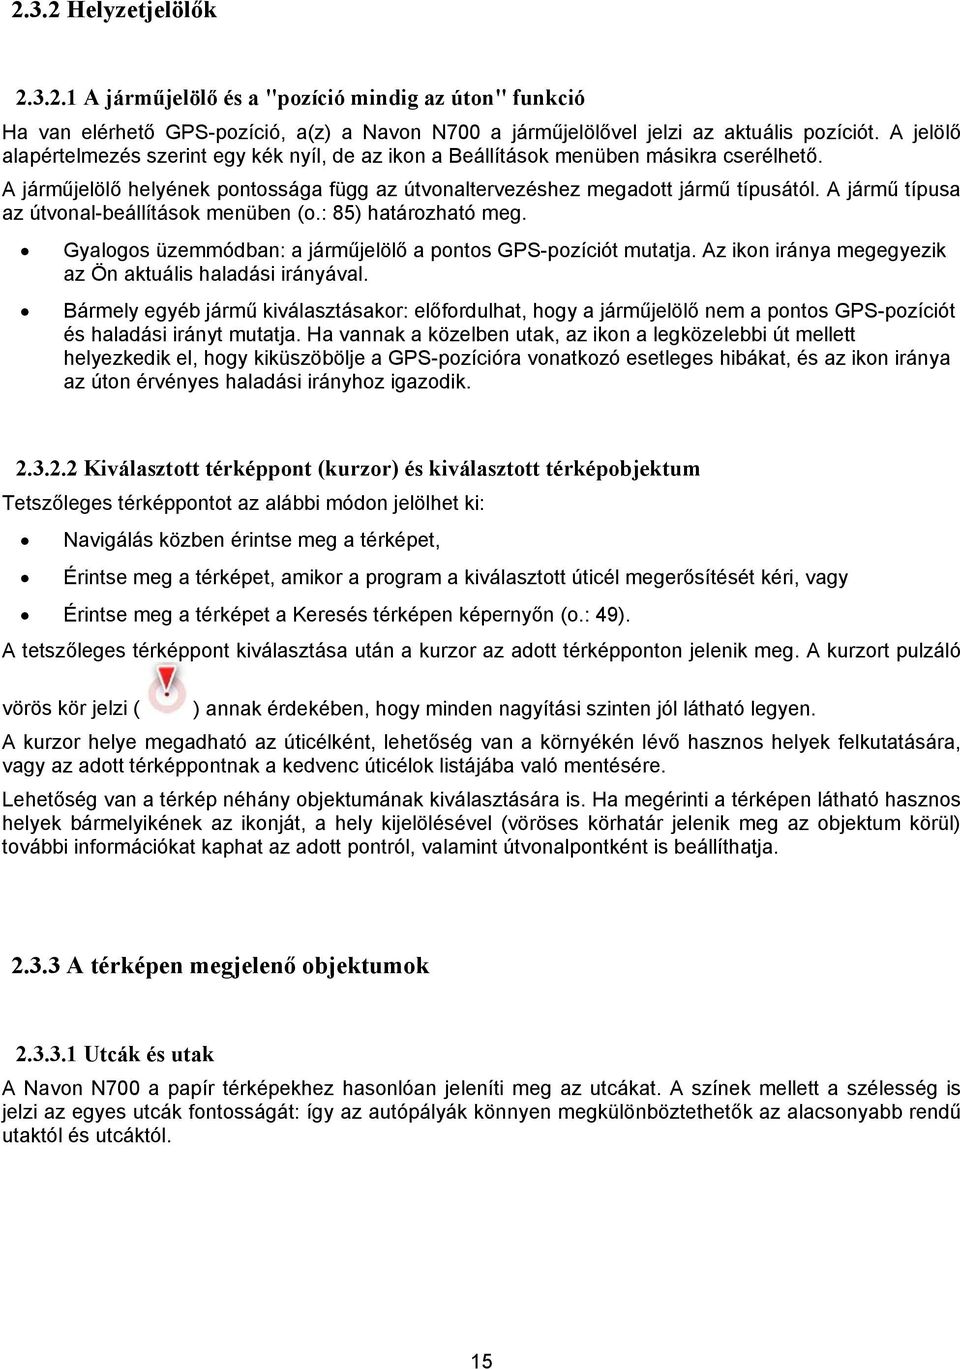 Felhasználói útmutató - PDF Ingyenes letöltés